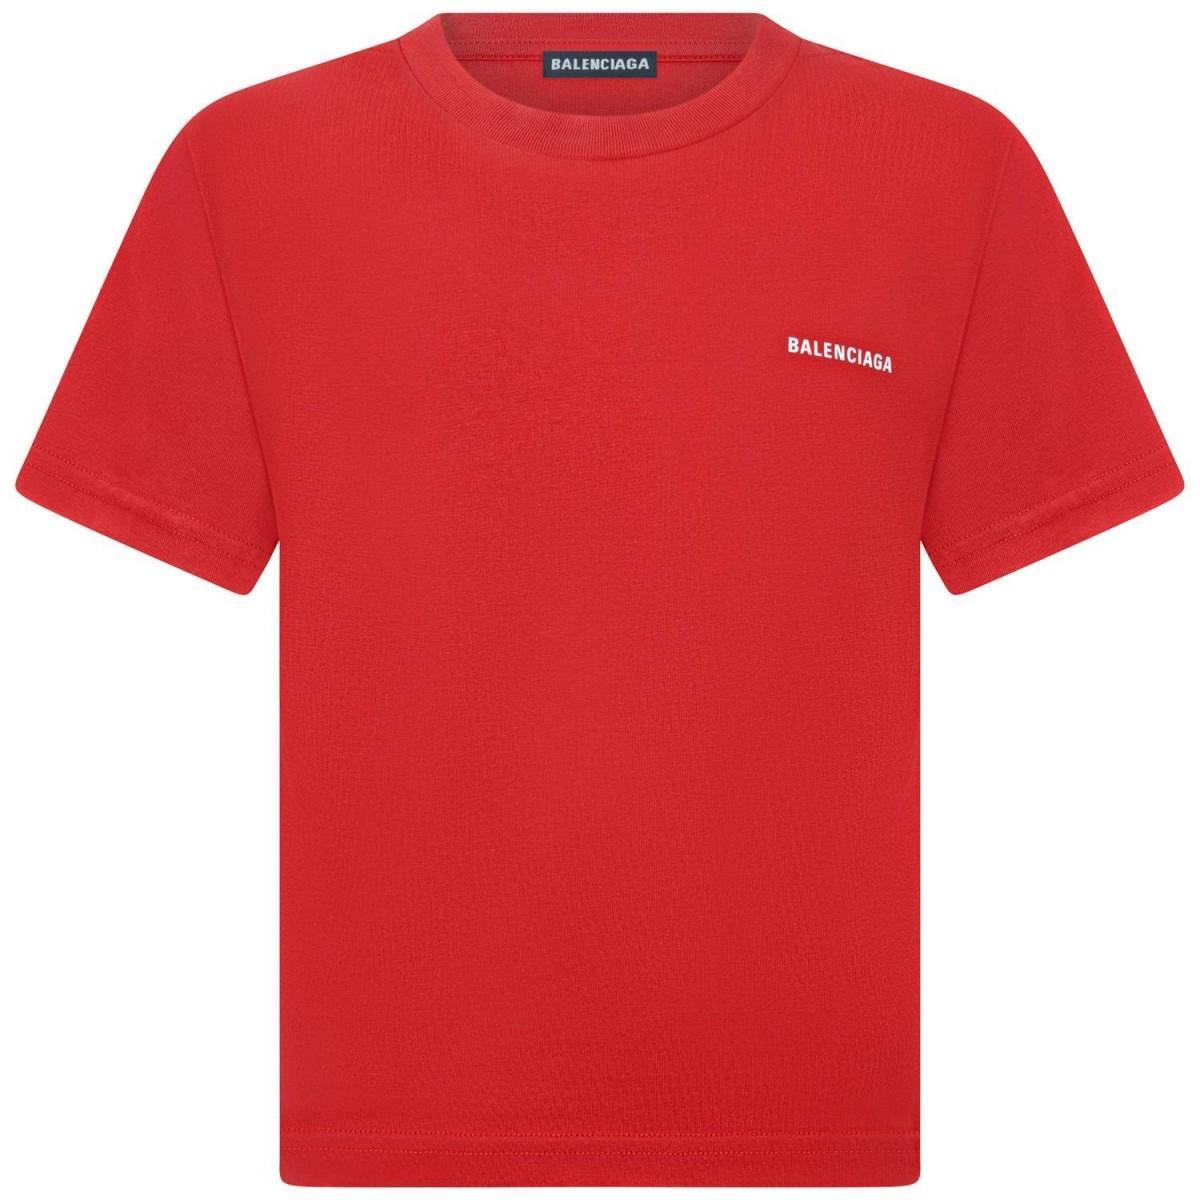 balenciaga red t shirt